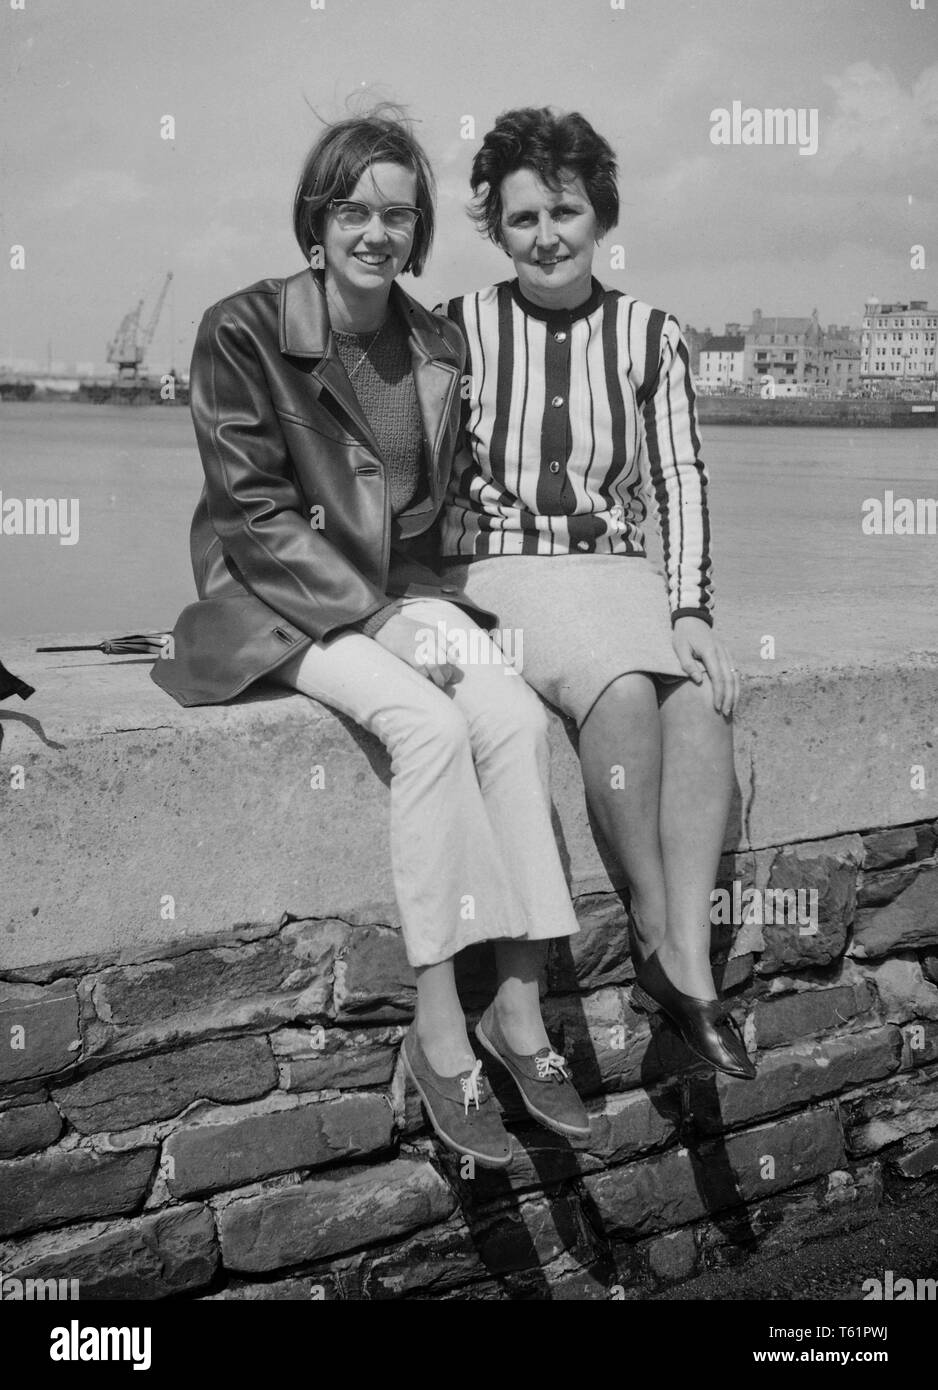 Madre e figlia in posa su una parete del porto in mode del tempo.  Fotografia amatoriale da una collezione di famiglia in vacanza al mare in  Inghilterra. c1950 Foto di Tony Henshaw